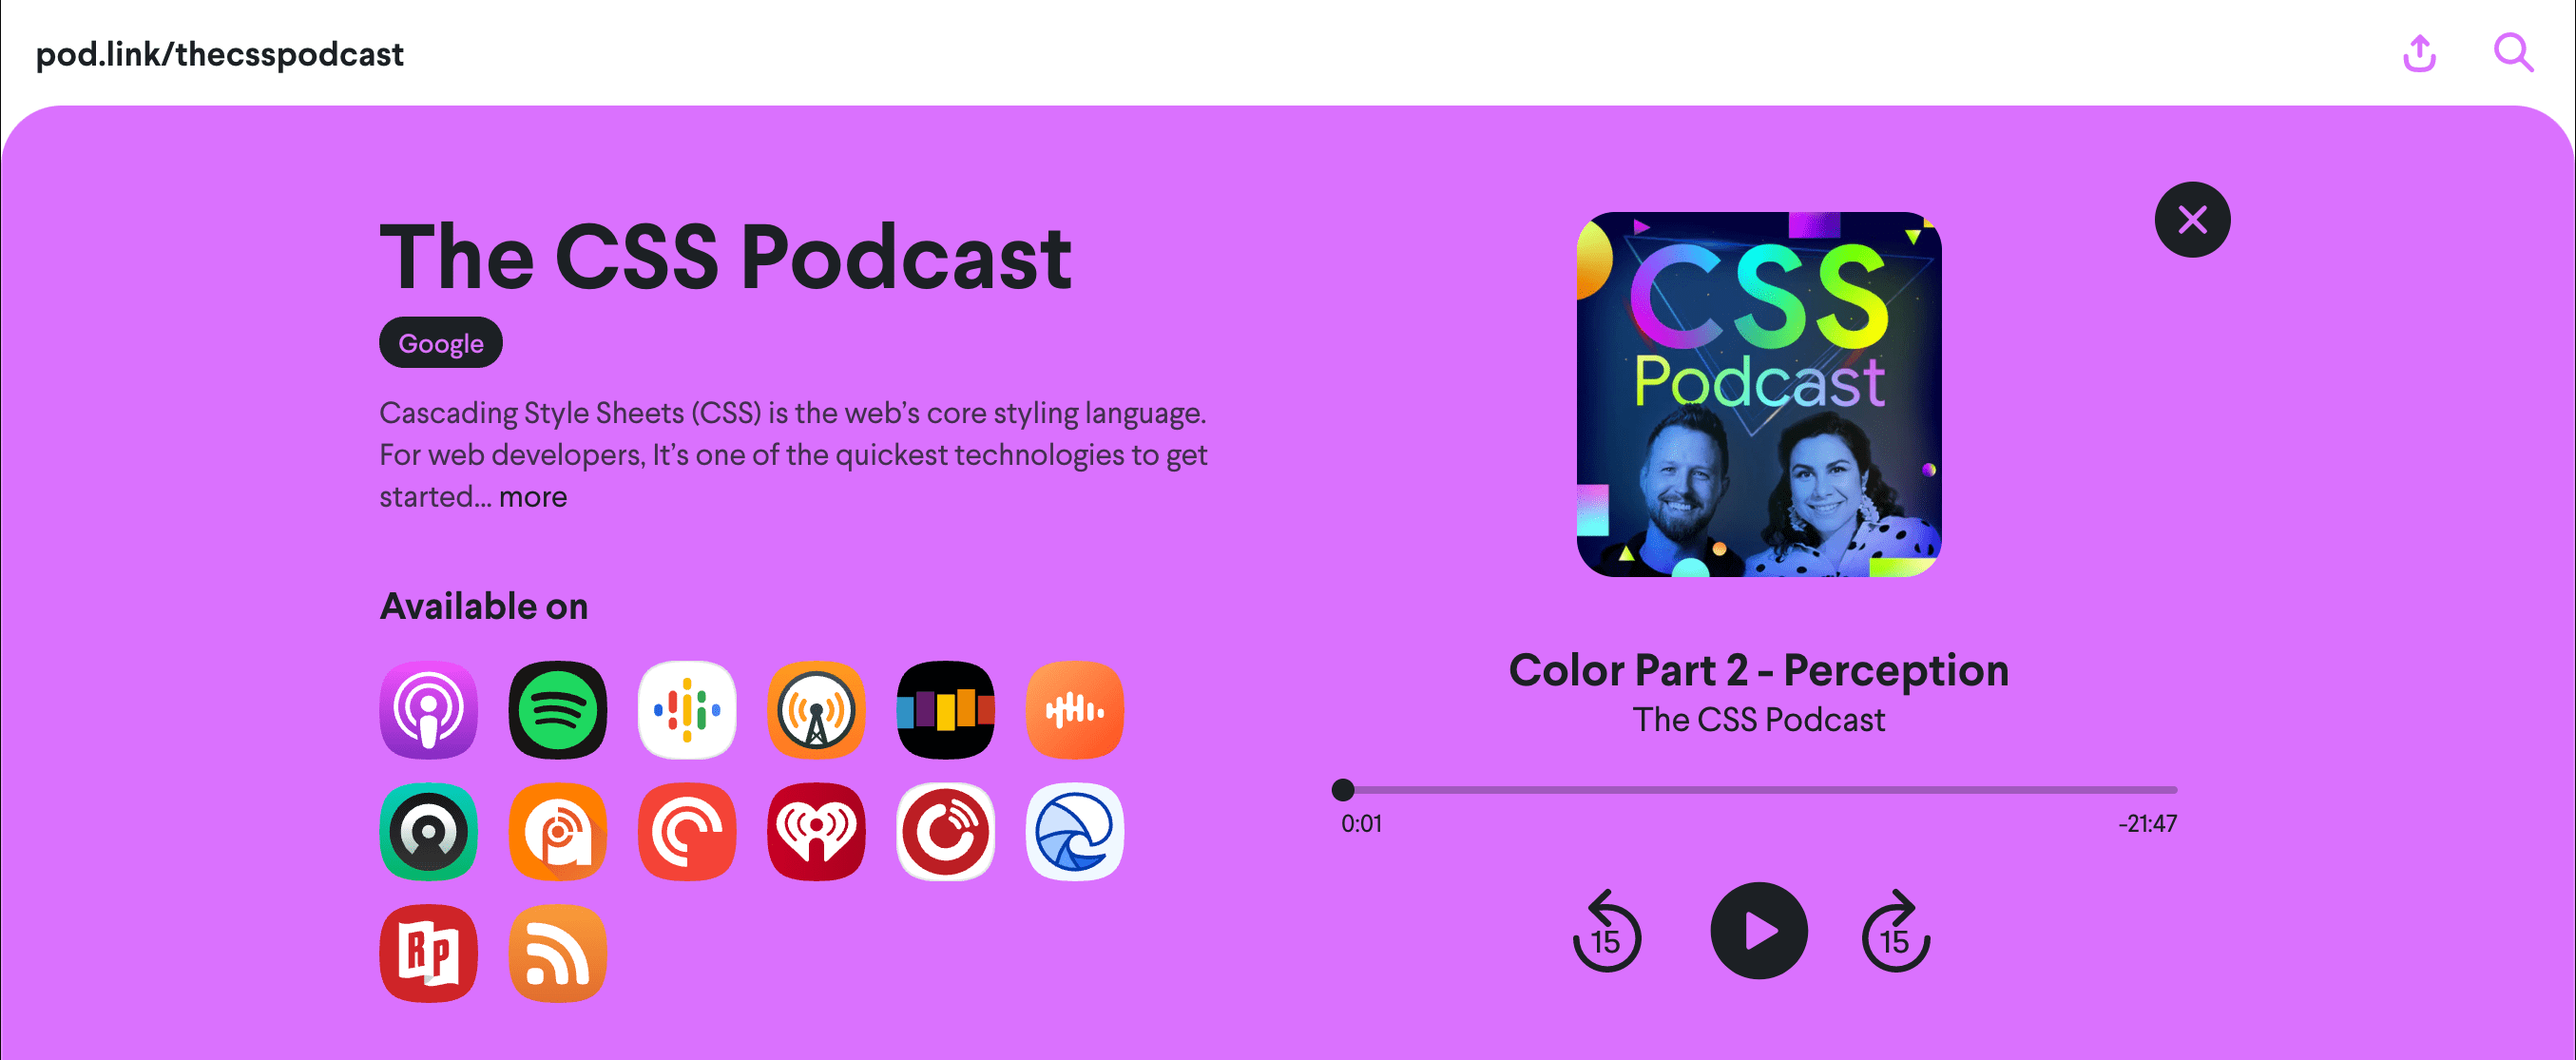 Renk 2: Algı bölümünün alındığı pod.link/csspodcast web sayfasının ekran görüntüsü